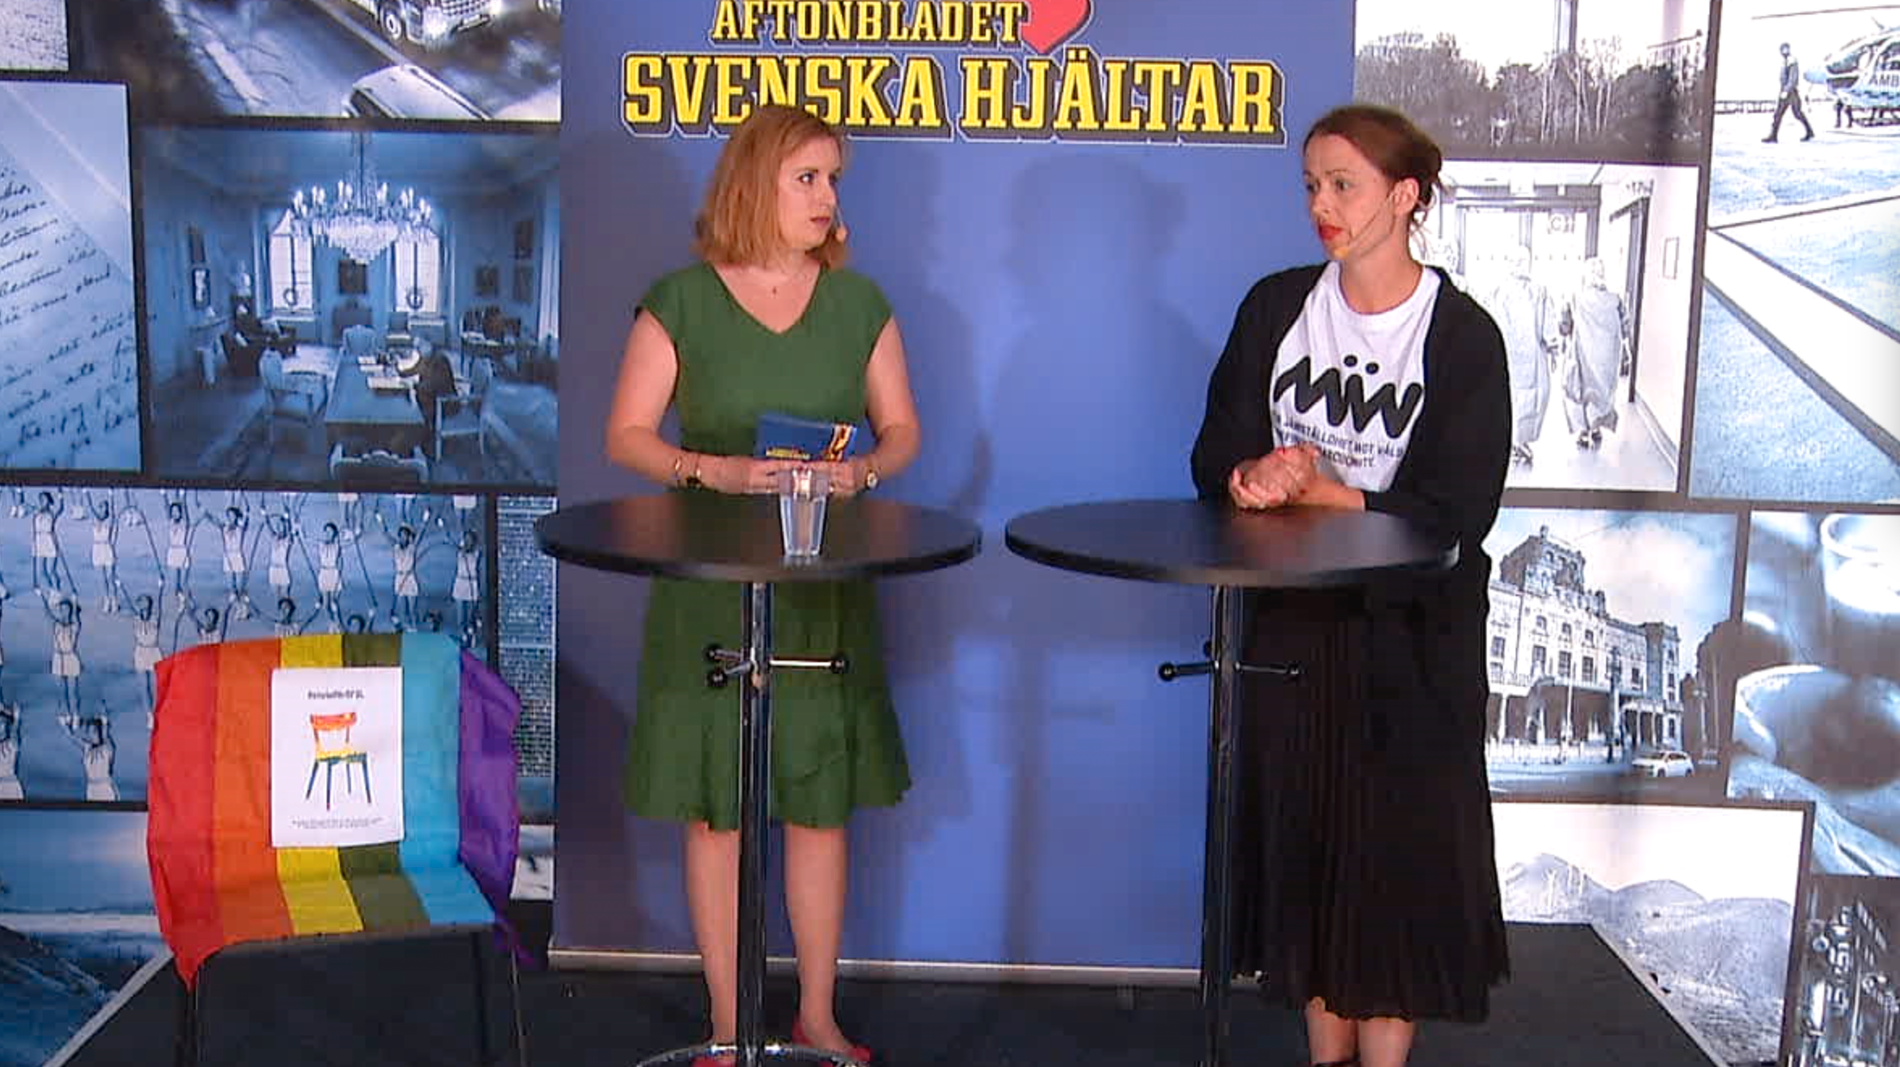 Under Svenska hjältars panelsamtal om civilkurage var #enstolförrfsl på scenen.